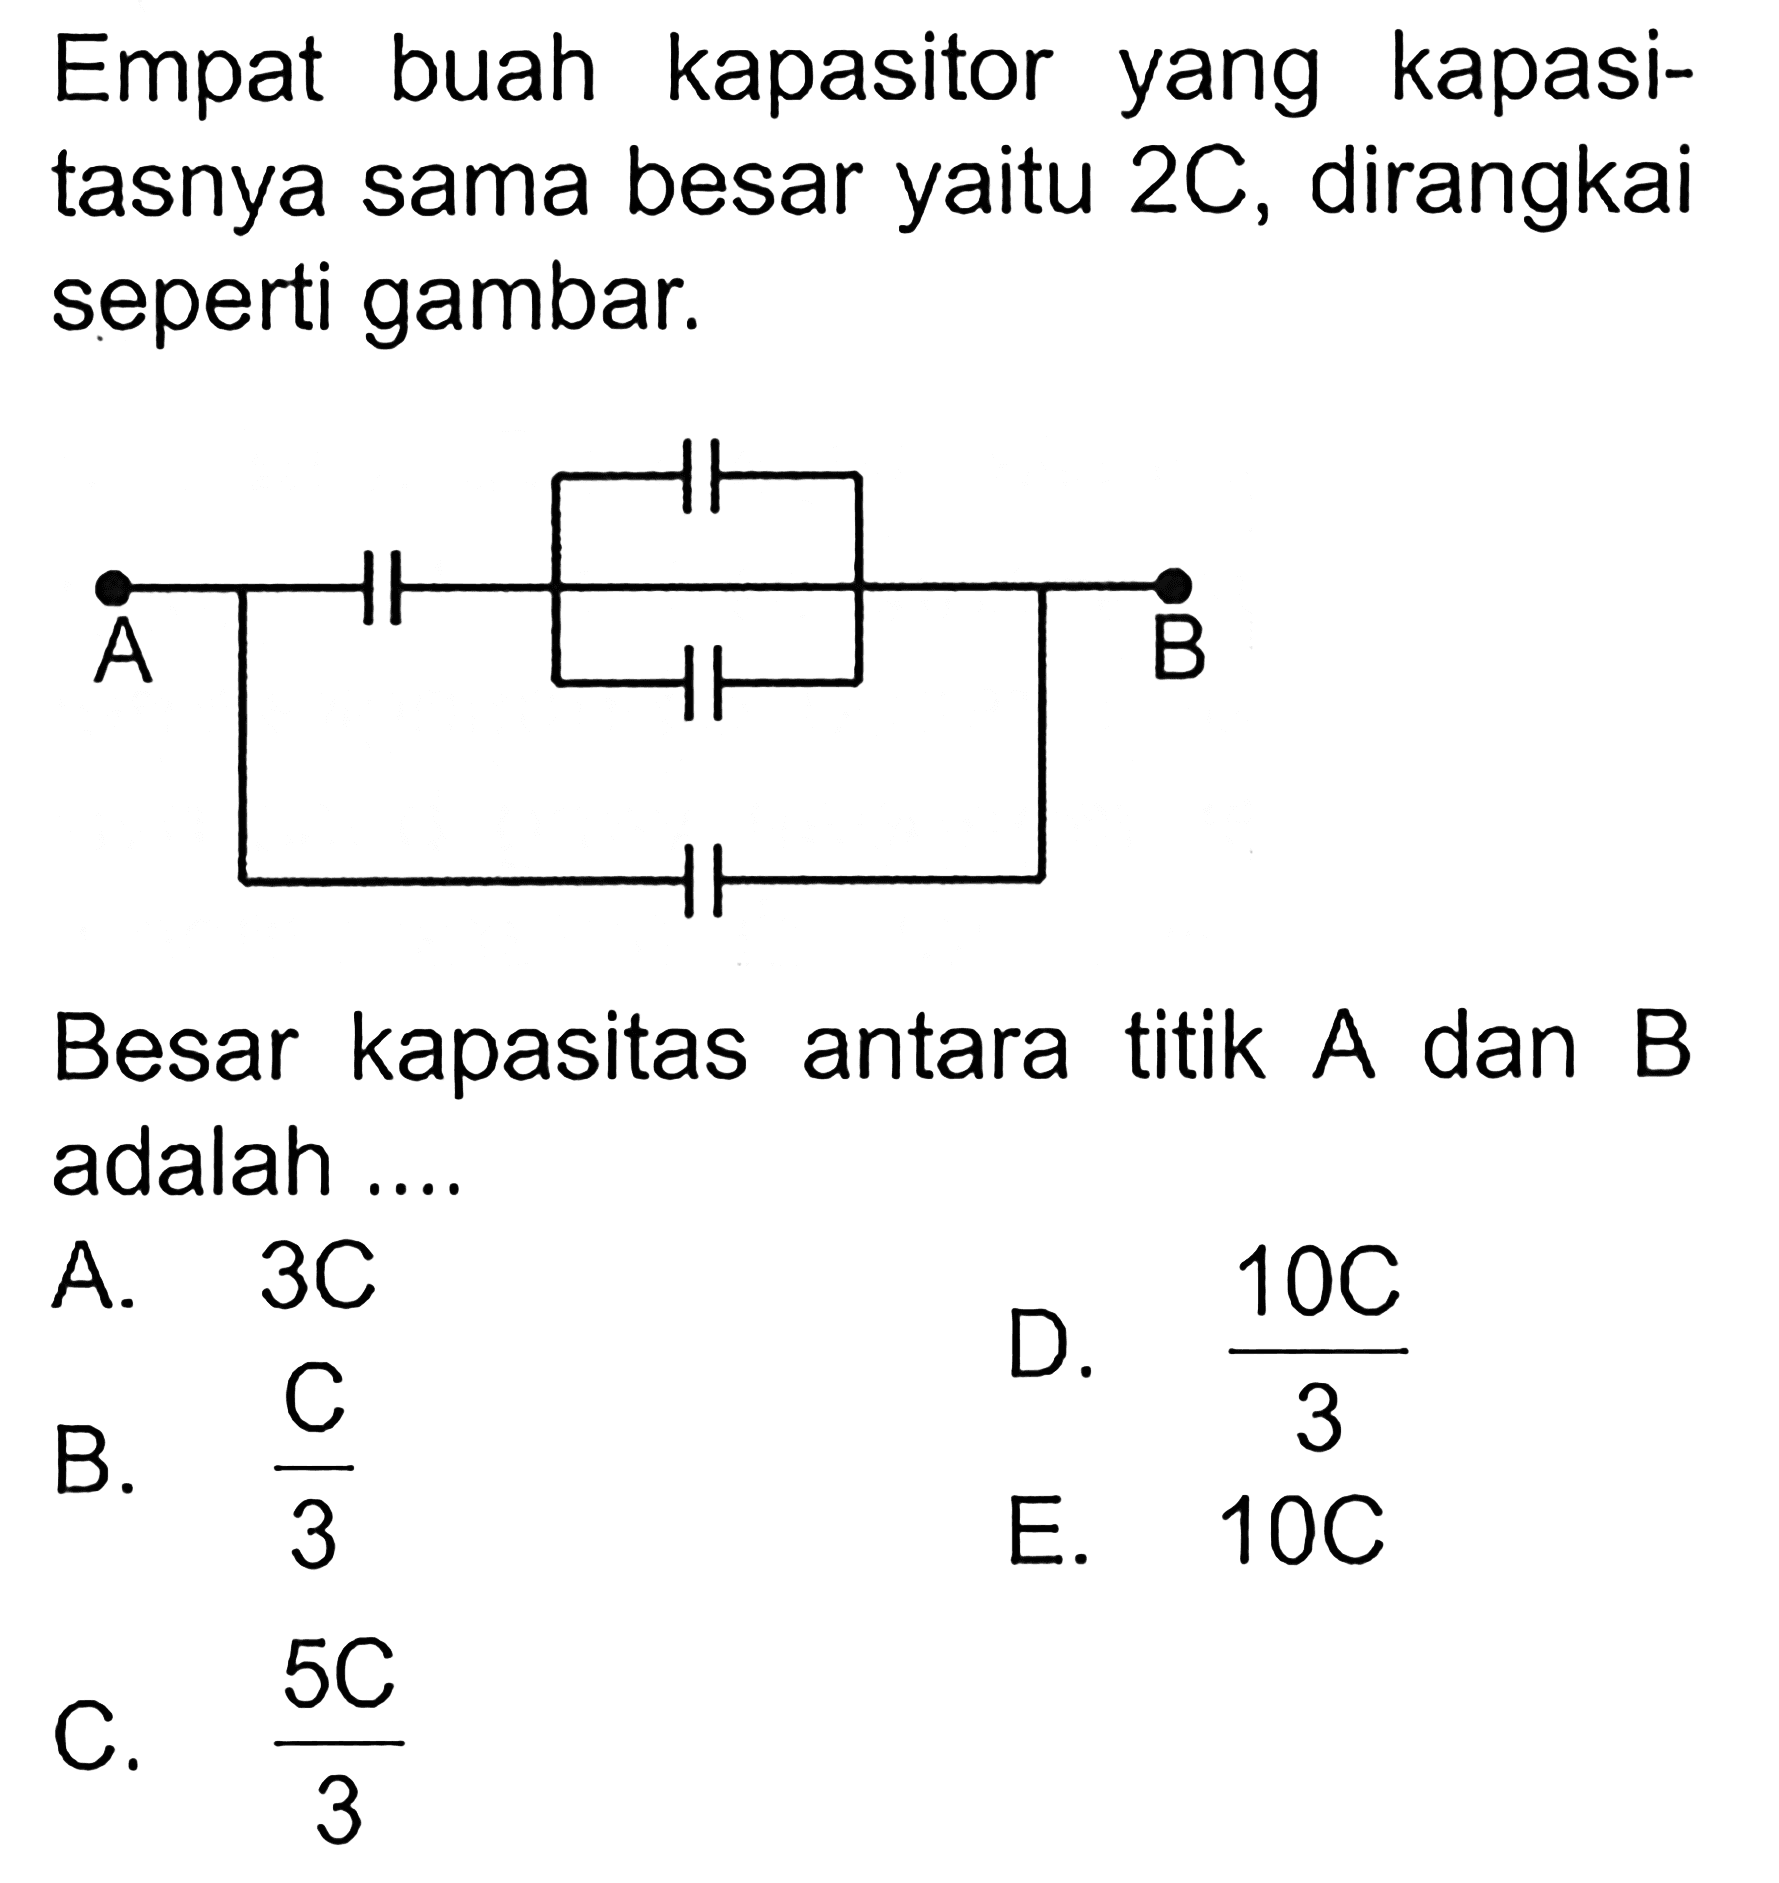 Empat buah kapasitor yang kapasitasnya sama besar yaitu 2C, dirangkai seperti gambar. A B Besar kapasitas antara titik A dan B adalah ... A. 3C B.  C/3 D.  (10C)/3  E.  10C C.  (5C)/3 